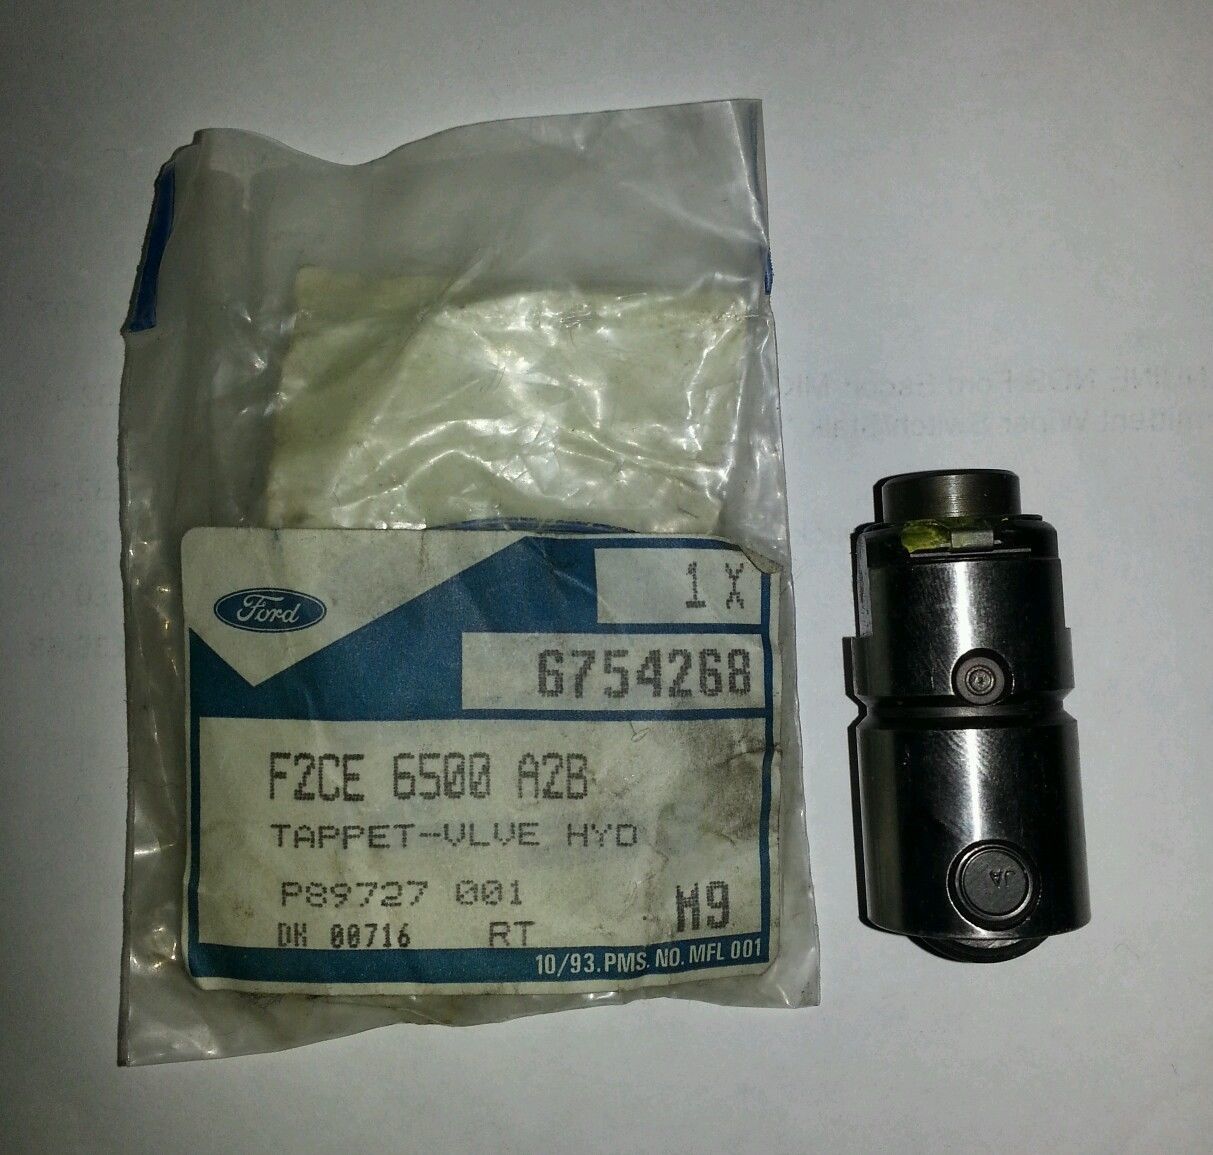 Ford F2CE-6500A-2B Hydraulic Lifter F2CE6500A2B